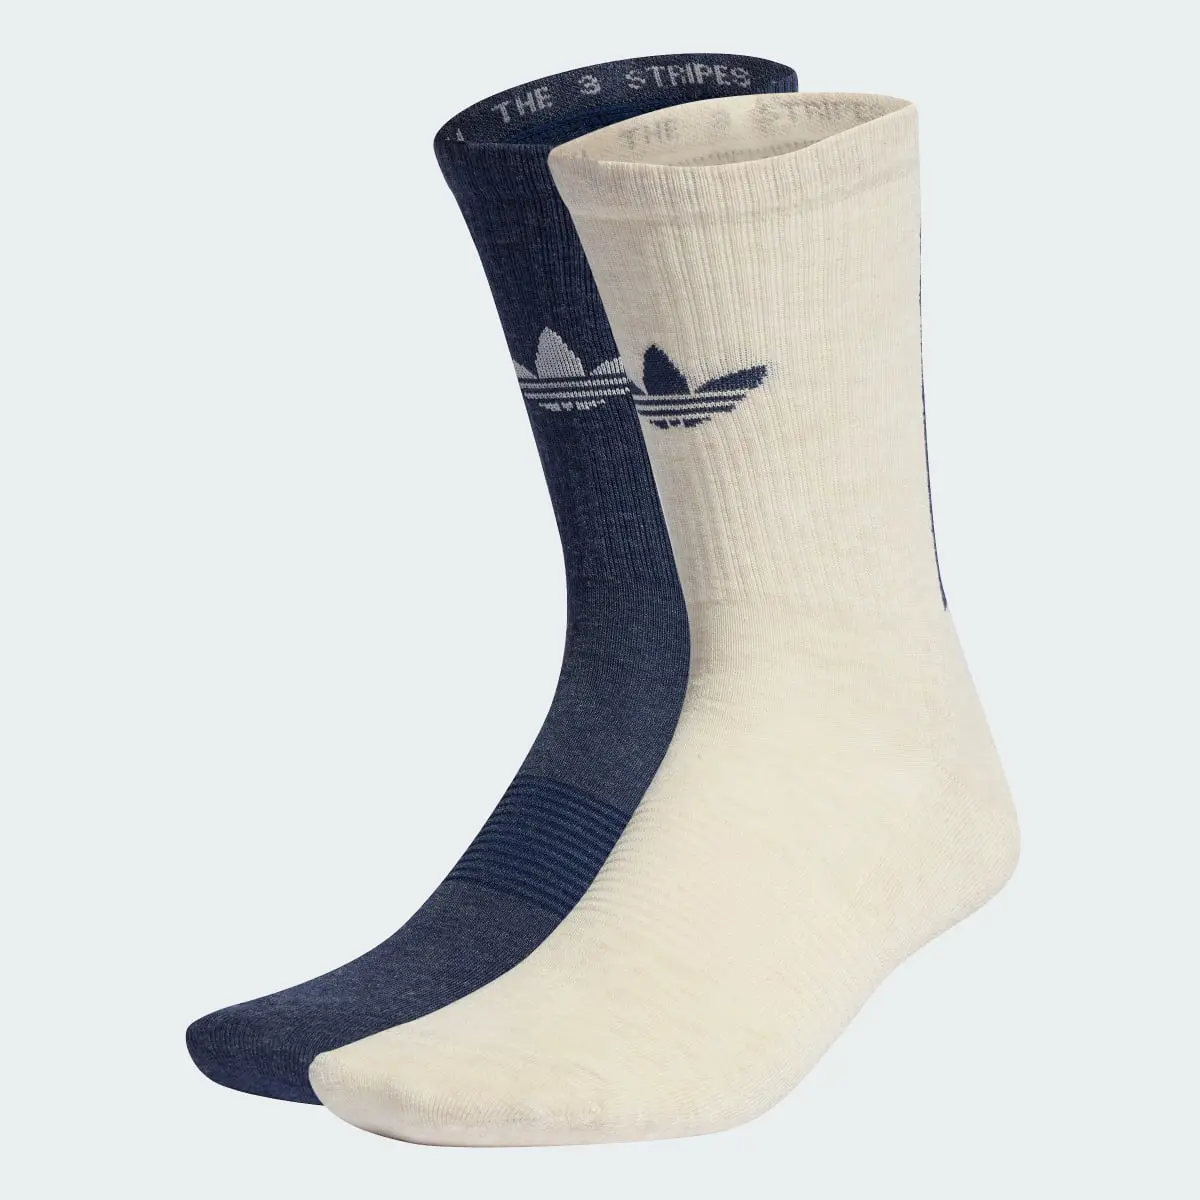 Adidas Trefoil Premium Crew Socks 2 Pairs. 2